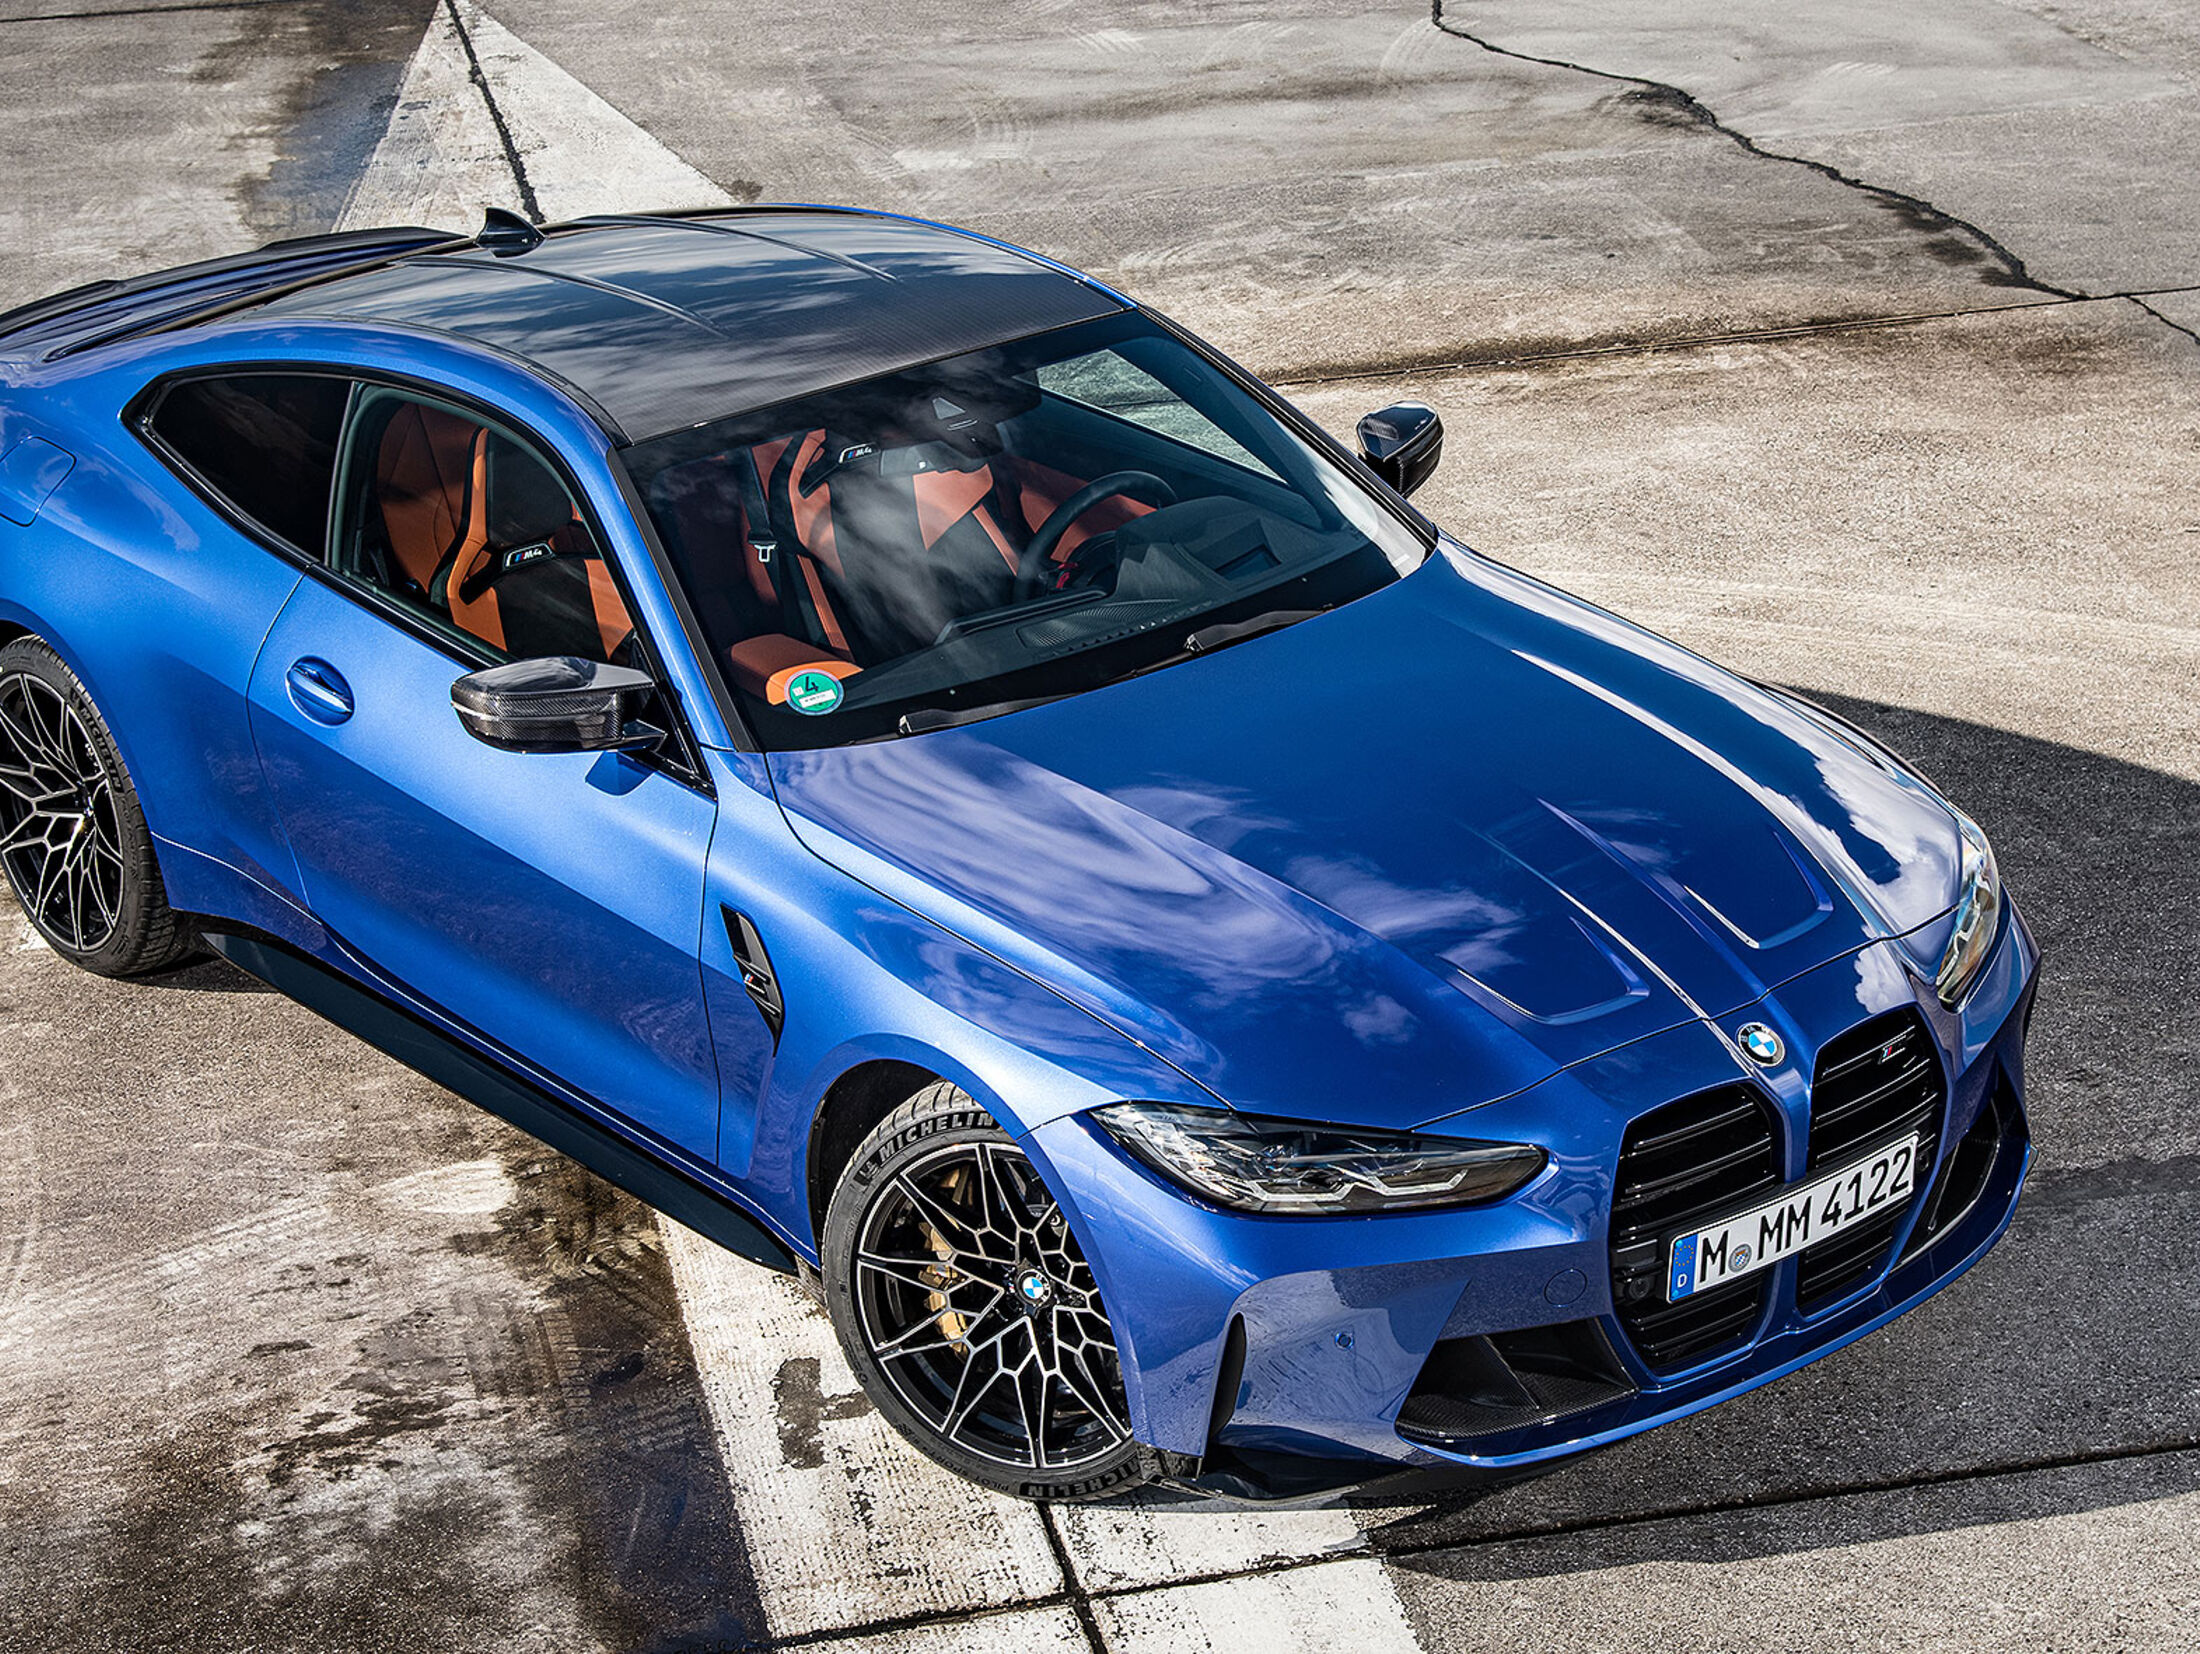 BMW Modellpflegen 2023: Digitaler und individueller